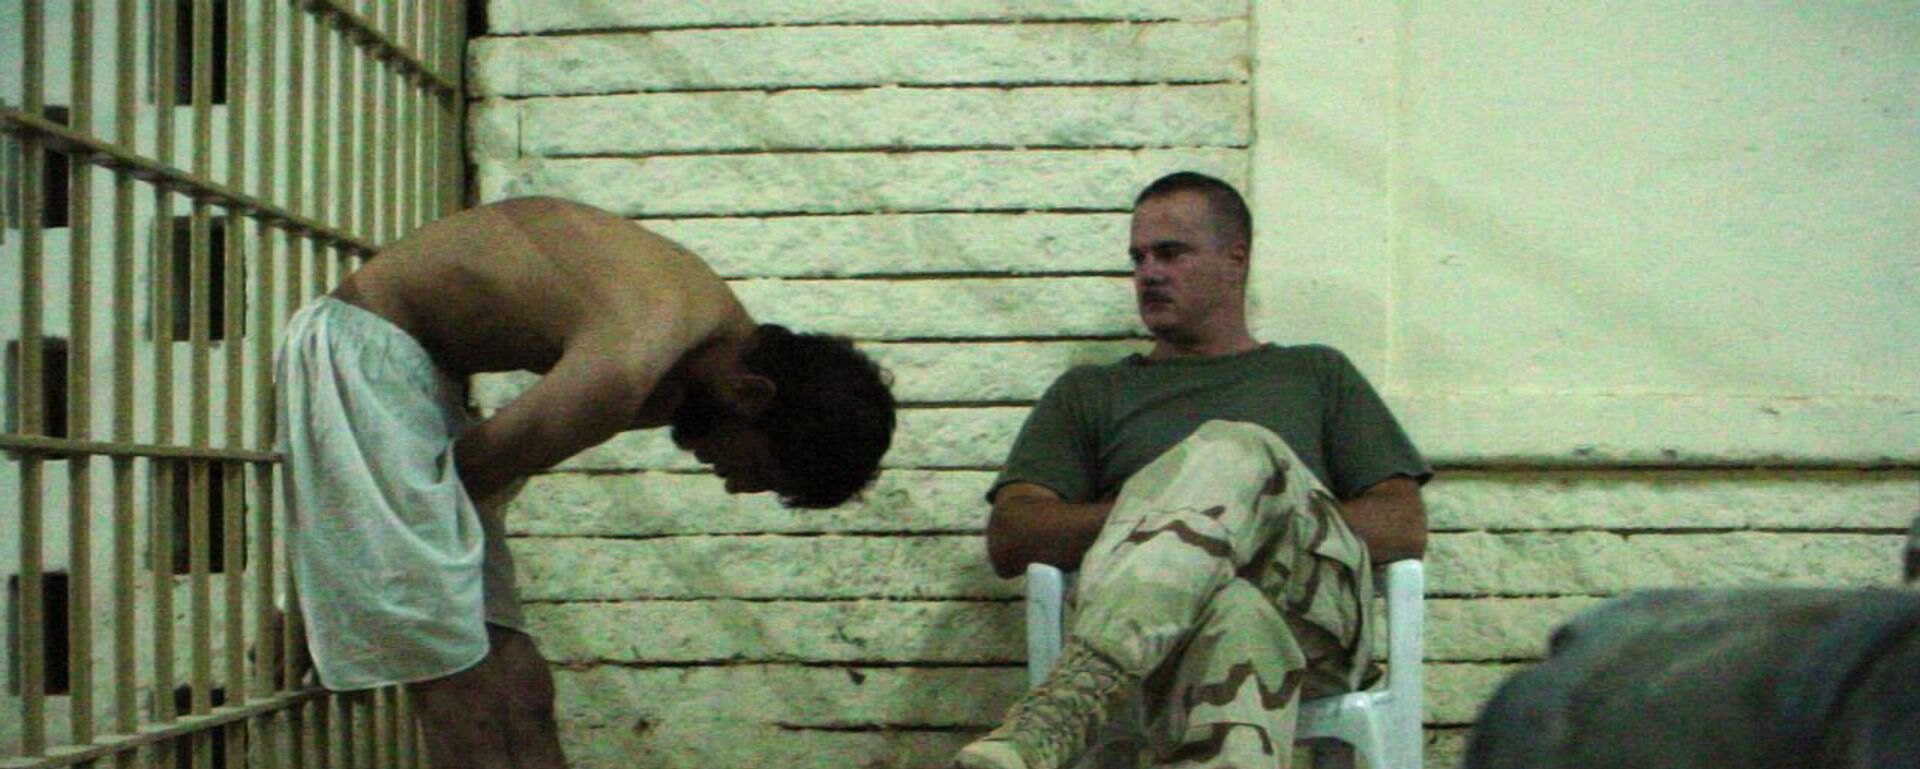 Američki vojnik posmatra zarobljenika u iračkom zatvoru Abu Grejb - Sputnik Srbija, 1920, 20.03.2018